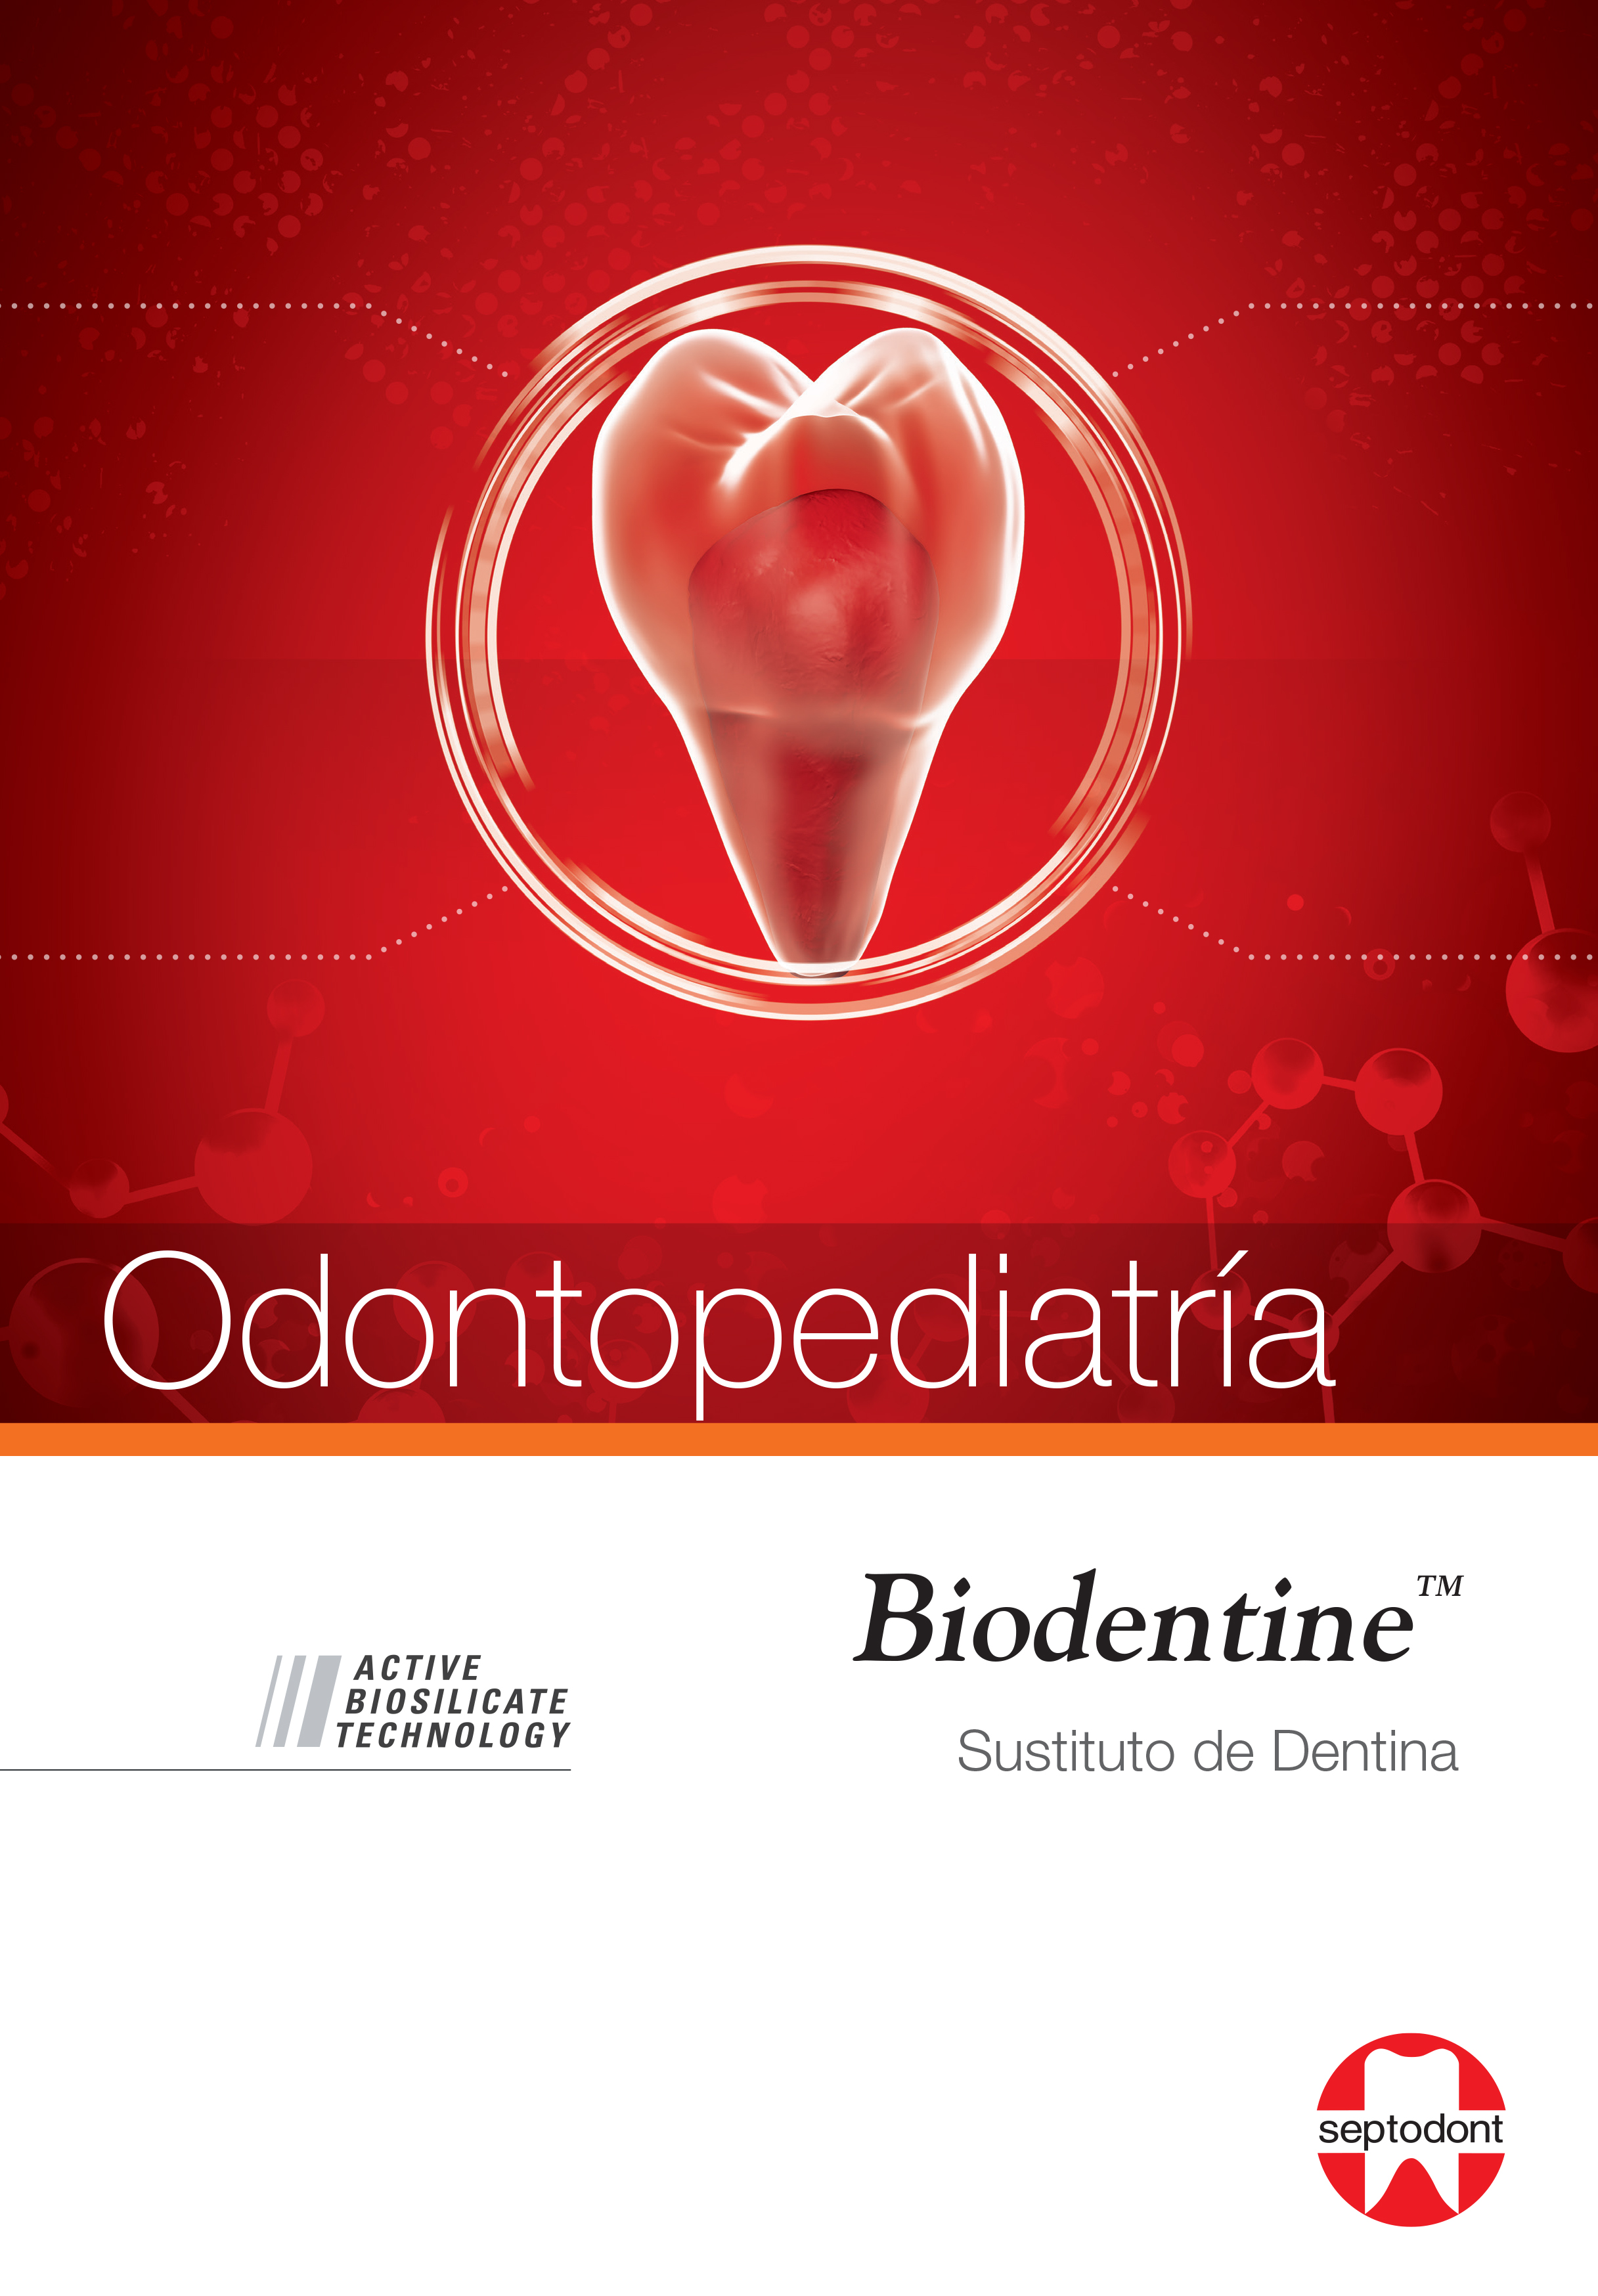 Biodentine folleto odontopediatria